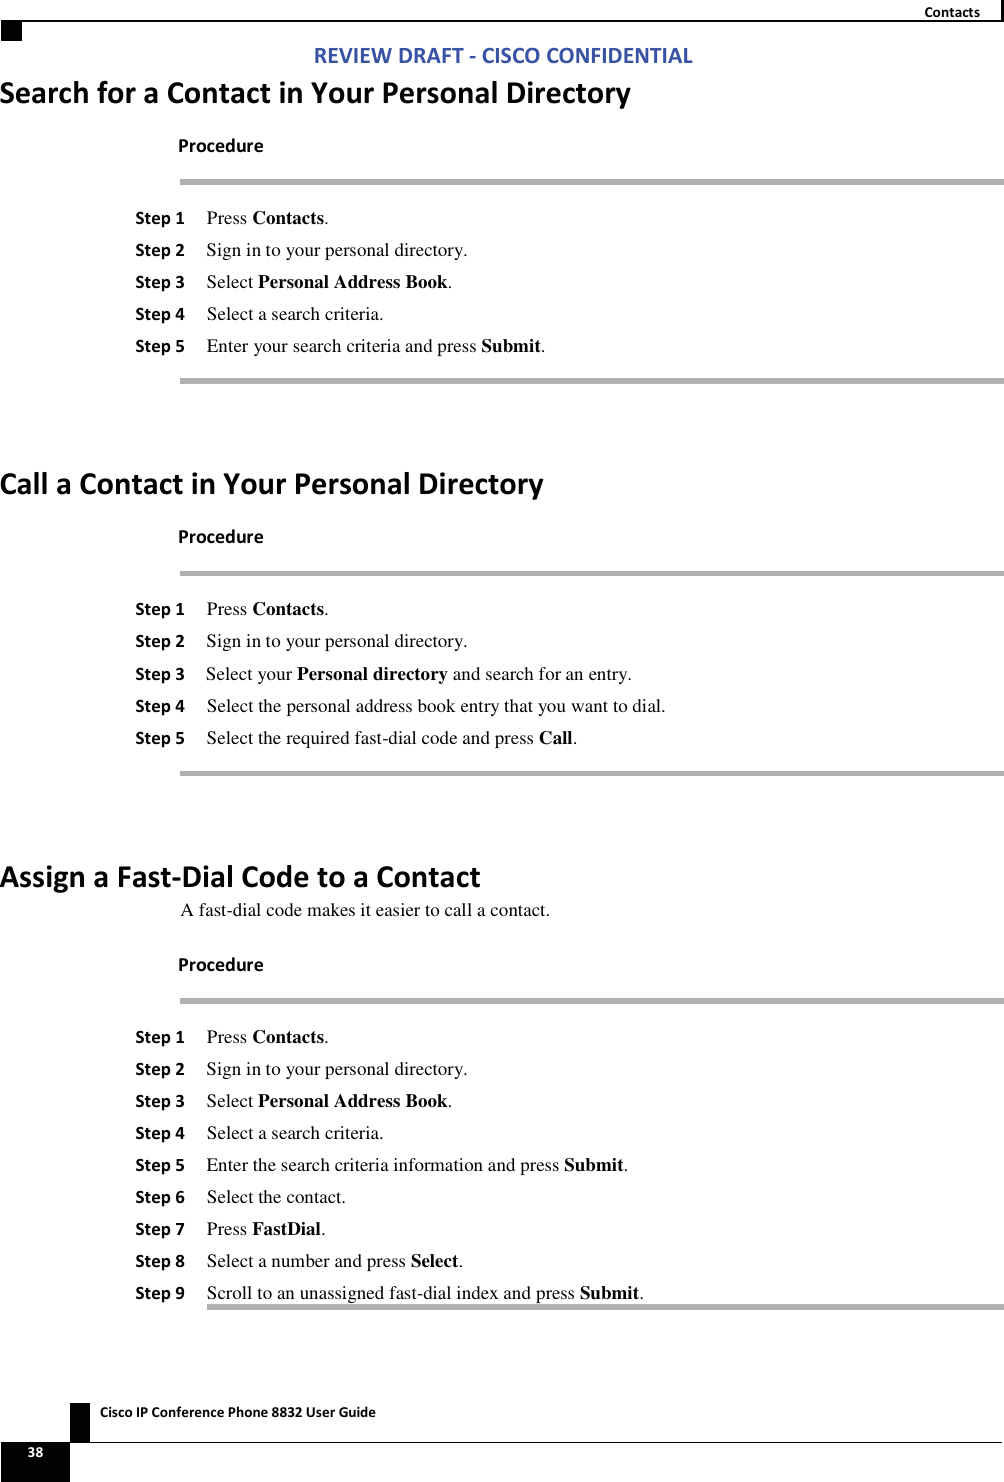 Zs/tZ&amp;dͲ/^KKE&amp;/Ed/&gt;   ŝƐĐŽ/WŽŶĨĞƌĞŶĐĞWŚŽŶĞϴϴϯϮhƐĞƌ&apos;ƵŝĚĞ ϯϴ  ŽŶƚĂĐƚƐ^ĞĂƌĐŚĨŽƌĂŽŶƚĂĐƚŝŶzŽƵƌWĞƌƐŽŶĂůŝƌĞĐƚŽƌǇWƌŽĐĞĚƵƌĞ ^ƚĞƉϭ Press Contacts. ^ƚĞƉϮ Sign in to your personal directory. ^ƚĞƉϯ Select Personal Address Book. ^ƚĞƉϰ Select a search criteria. ^ƚĞƉϱ Enter your search criteria and press Submit.  ĂůůĂŽŶƚĂĐƚŝŶzŽƵƌWĞƌƐŽŶĂůŝƌĞĐƚŽƌǇWƌŽĐĞĚƵƌĞ ^ƚĞƉϭ Press Contacts. ^ƚĞƉϮ Sign in to your personal directory. ^ƚĞƉϯ Select your Personal directory and search for an entry. ^ƚĞƉϰ Select the personal address book entry that you want to dial. ^ƚĞƉϱ Select the required fast-dial code and press Call.  ƐƐŝŐŶĂ&amp;ĂƐƚͲŝĂůŽĚĞƚŽĂŽŶƚĂĐƚA fast-dial code makes it easier to call a contact. WƌŽĐĞĚƵƌĞ ^ƚĞƉϭ Press Contacts. ^ƚĞƉϮ Sign in to your personal directory. ^ƚĞƉϯ Select Personal Address Book. ^ƚĞƉϰ Select a search criteria. ^ƚĞƉϱ Enter the search criteria information and press Submit. ^ƚĞƉϲ Select the contact. ^ƚĞƉϳ Press FastDial. ^ƚĞƉϴ Select a number and press Select. ^ƚĞƉϵ Scroll to an unassigned fast-dial index and press Submit. 